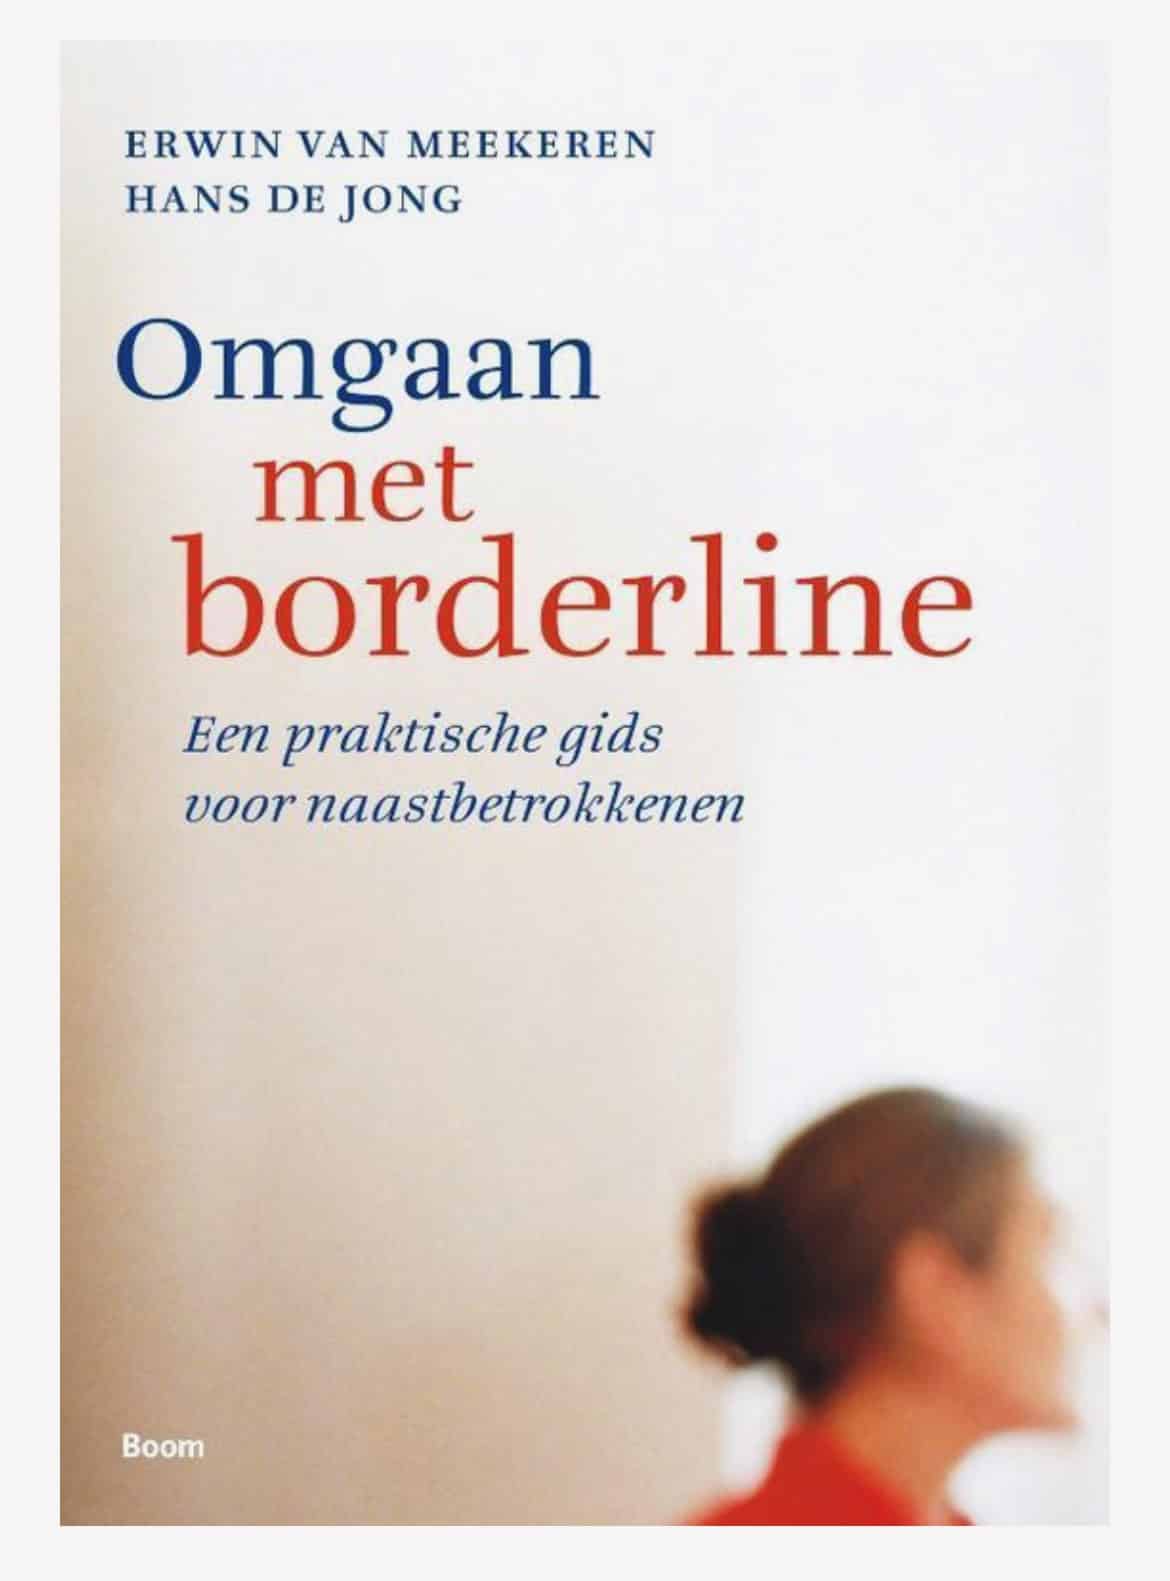 Boek Erwin van Meekeren Hans de Jong Omgaan met Borderline